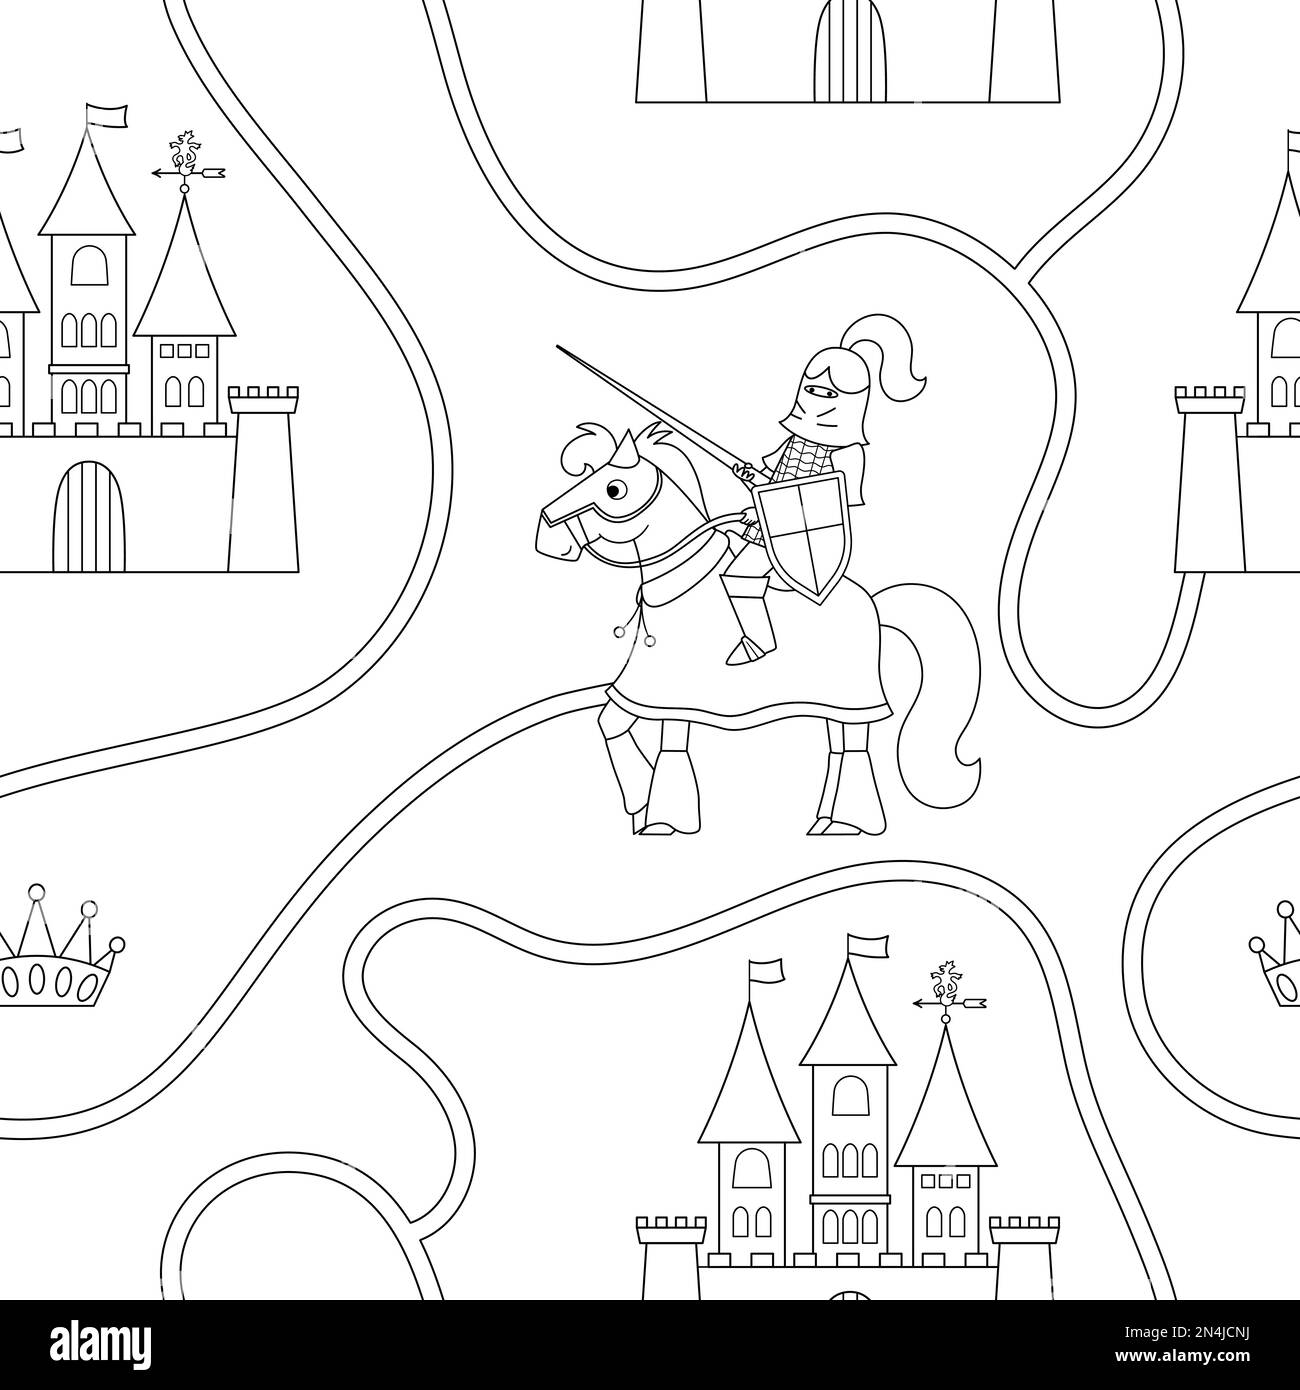 Schwarz-Weiß-Muster mit Märchenprinz, Ritter, Straße, Schloss, Krone. Wiederhole den Hintergrund mit einem Fantasy-bewaffneten Krieger und einem Königlichen Plan. Fairyta Stock Vektor